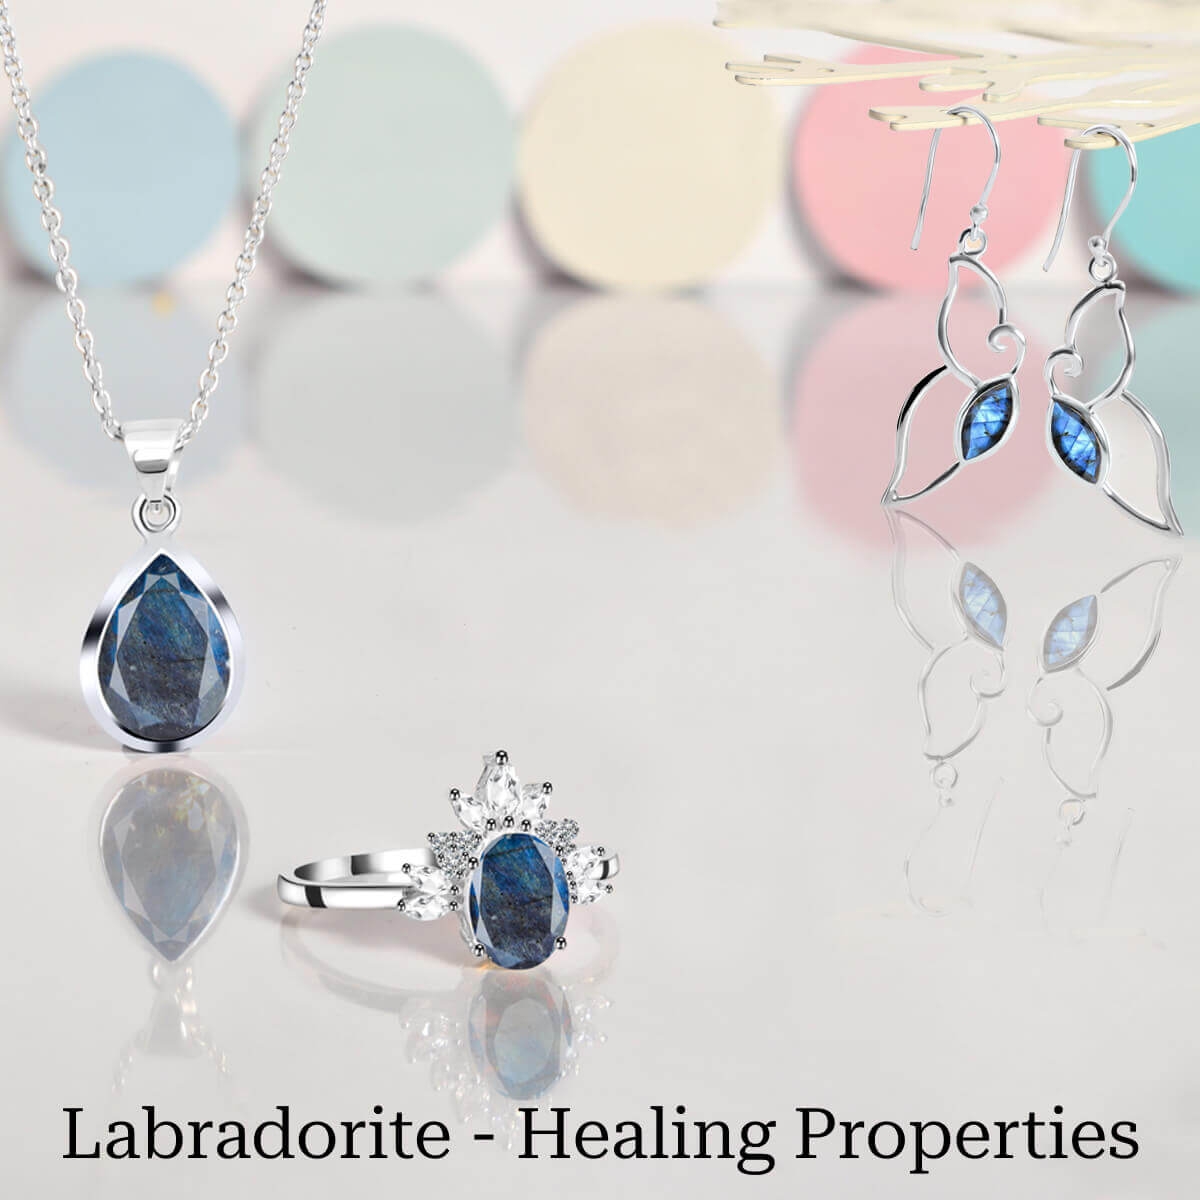 Healing Properties of Labradorite